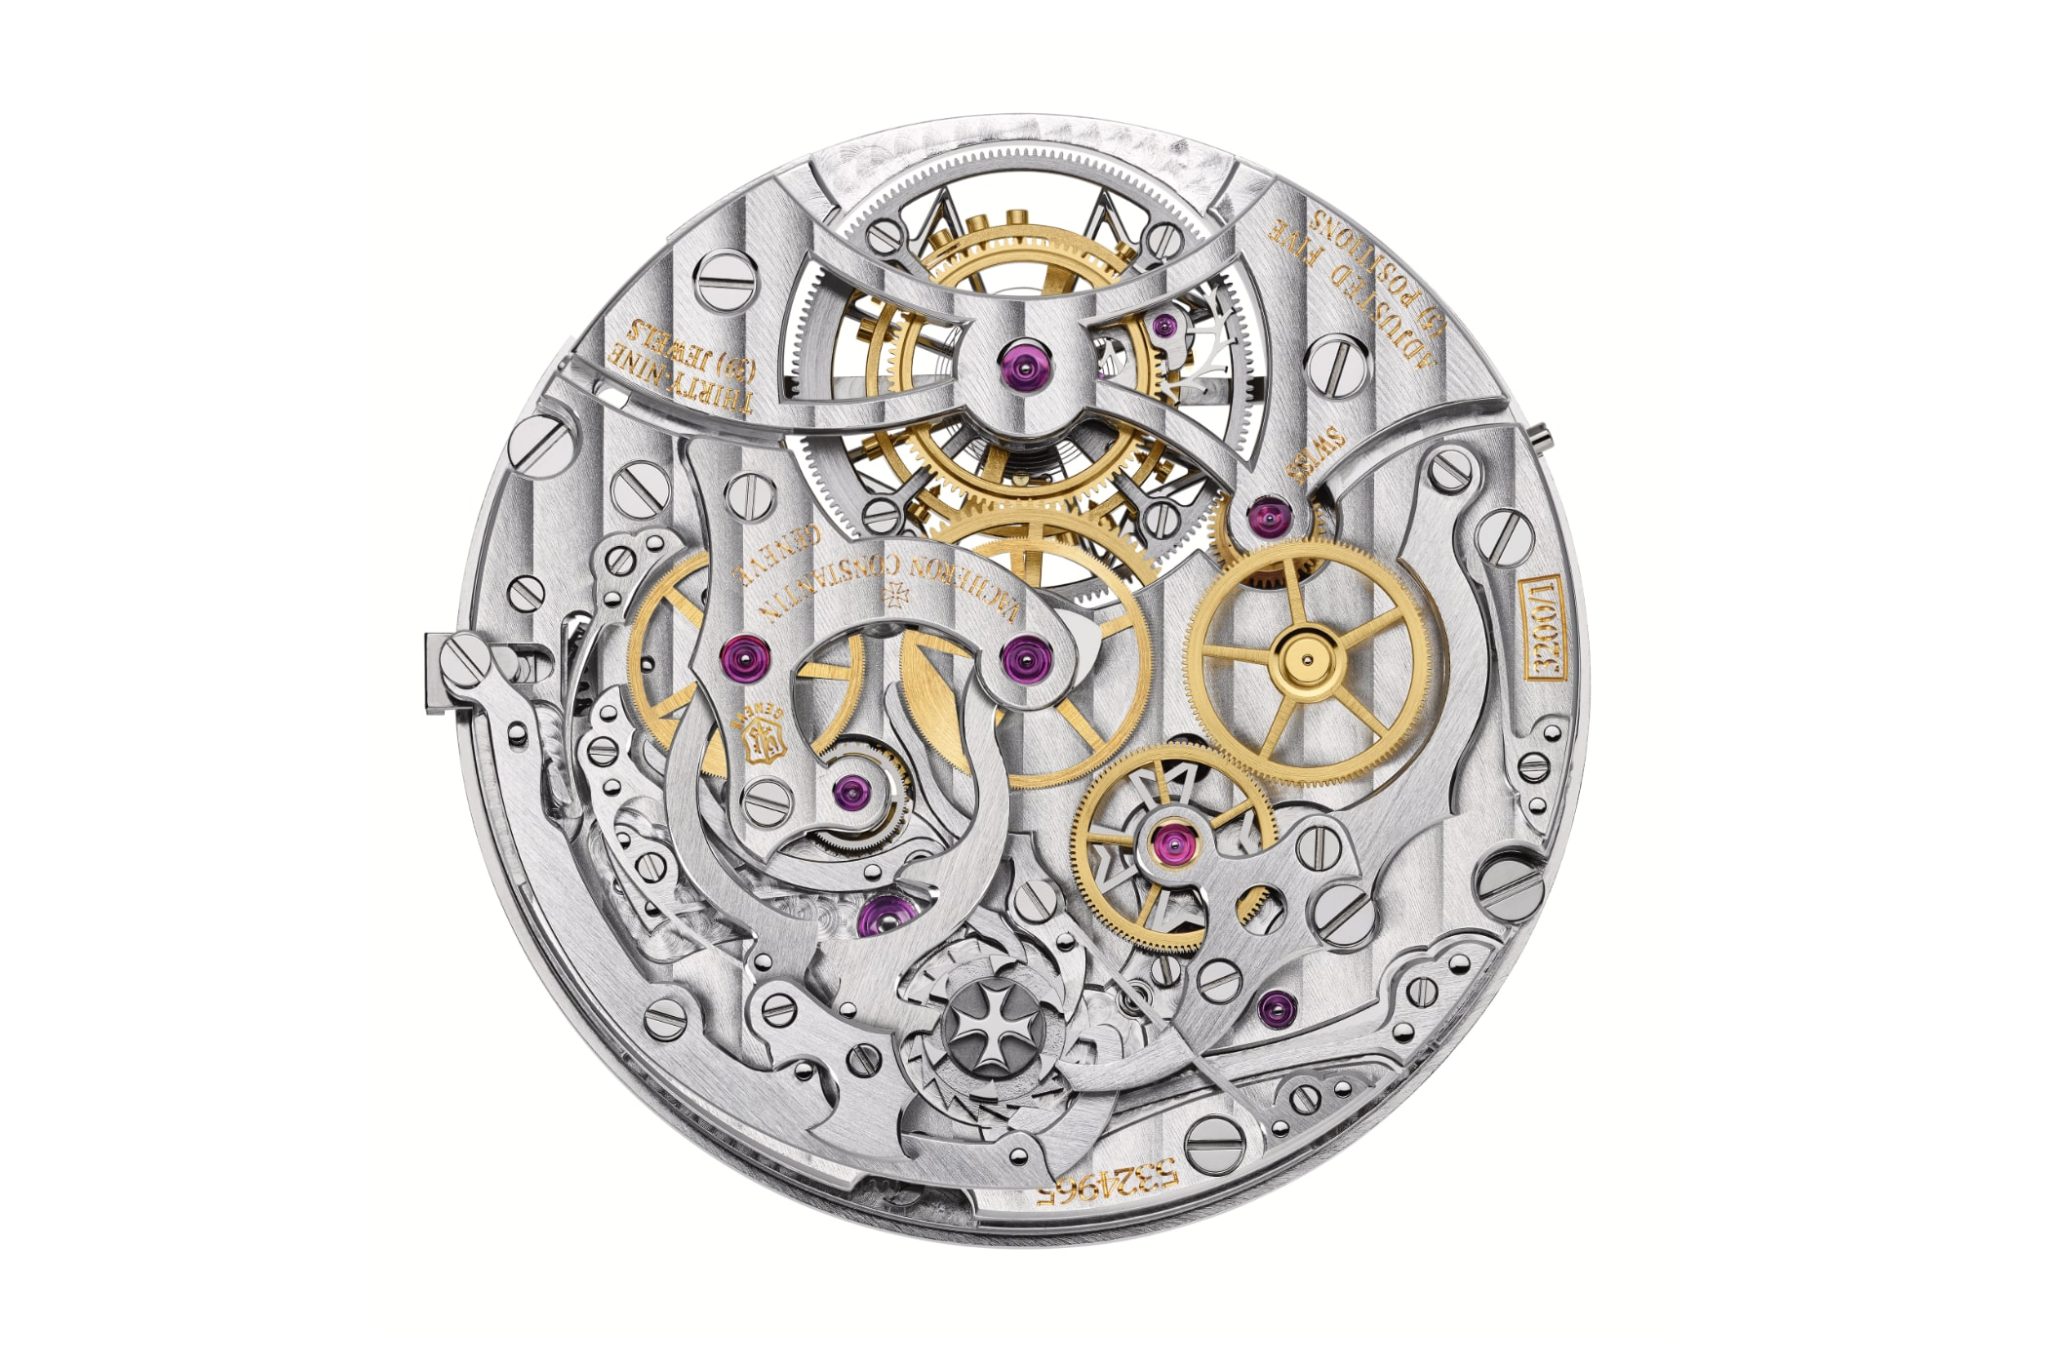 vacheron-constantin-traditionnelle-tourbillon-chronograph-collection-excellence-platine-5100t-000p-h041-movement-calibre-vc-3200-back